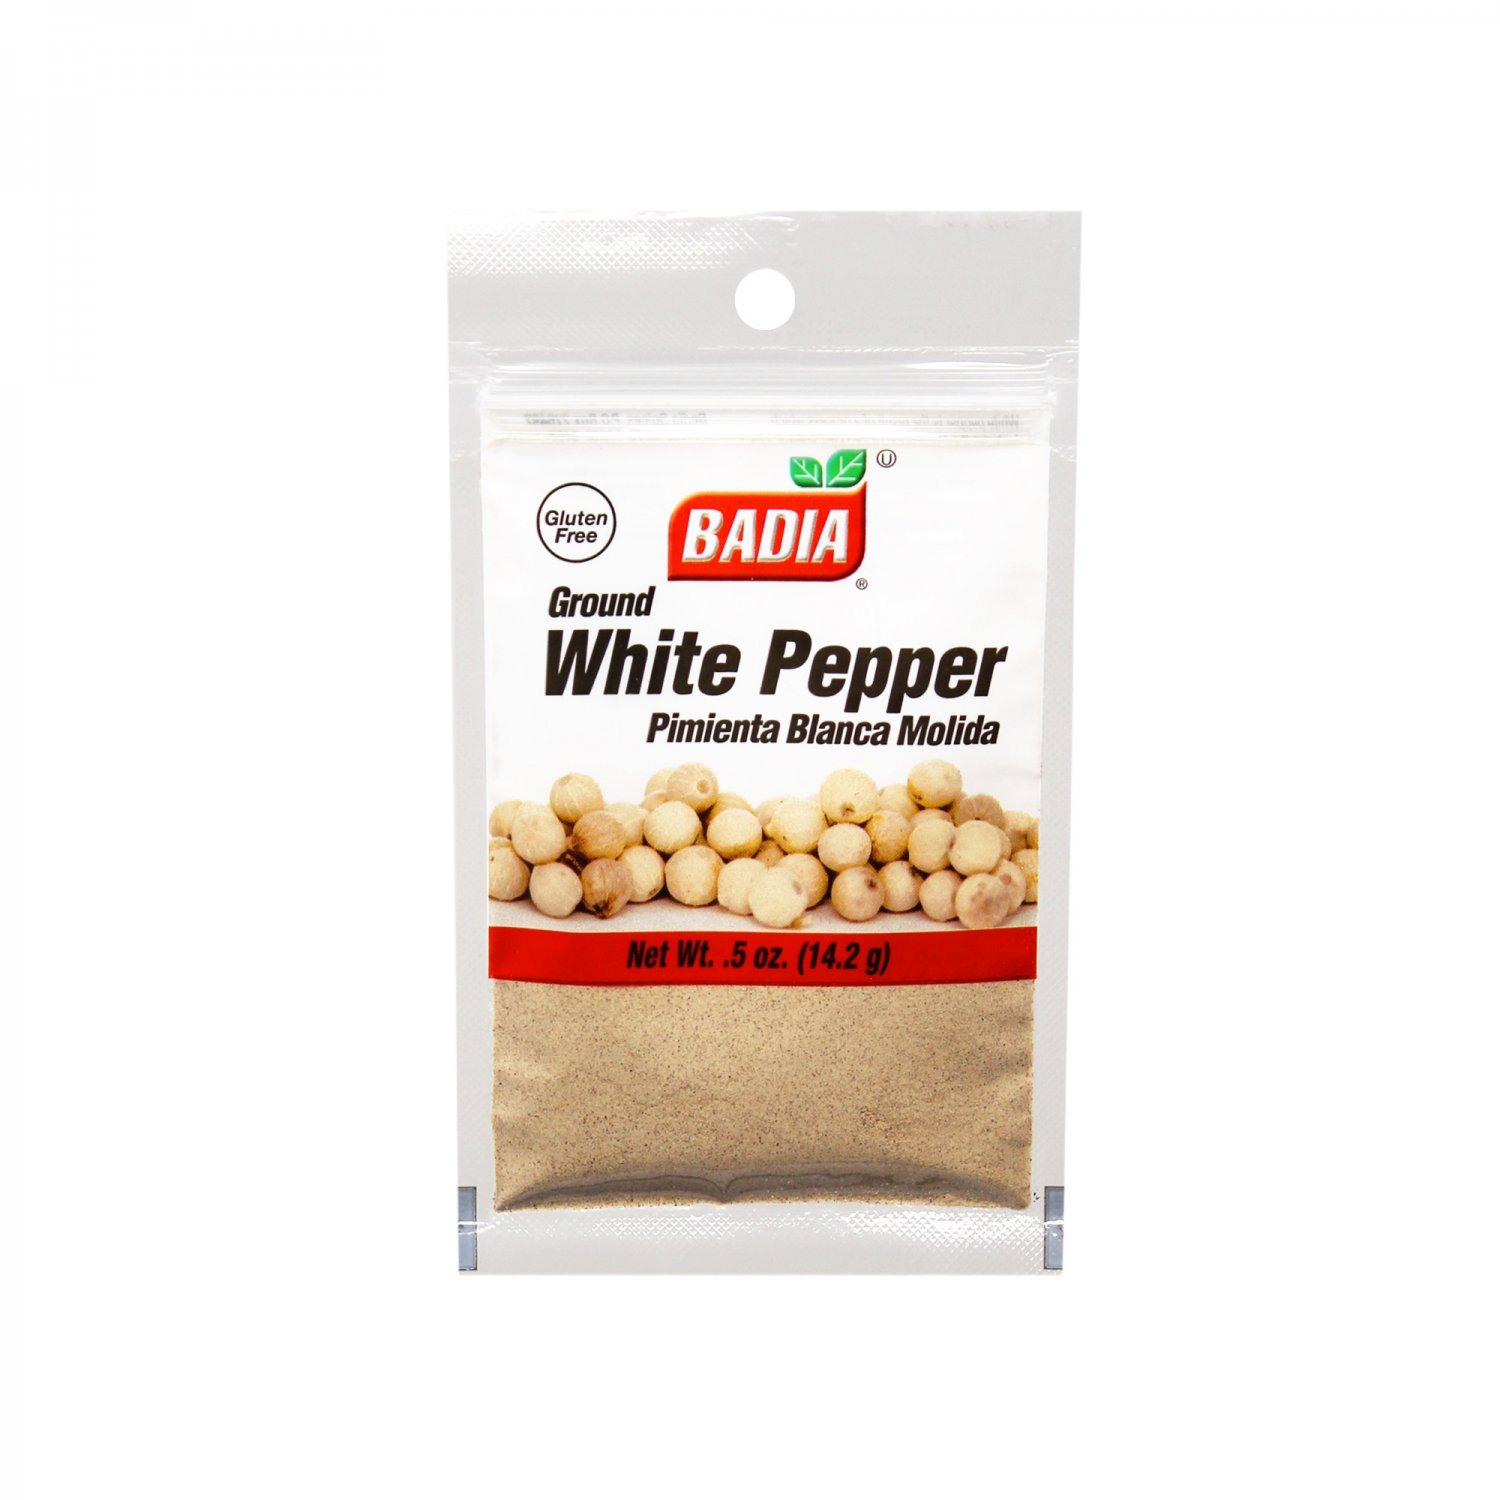 White pepper. Badia ground приправа. Ground White Pepper. SFC ground White Pepper 1x425grm. White Pepper YBA.